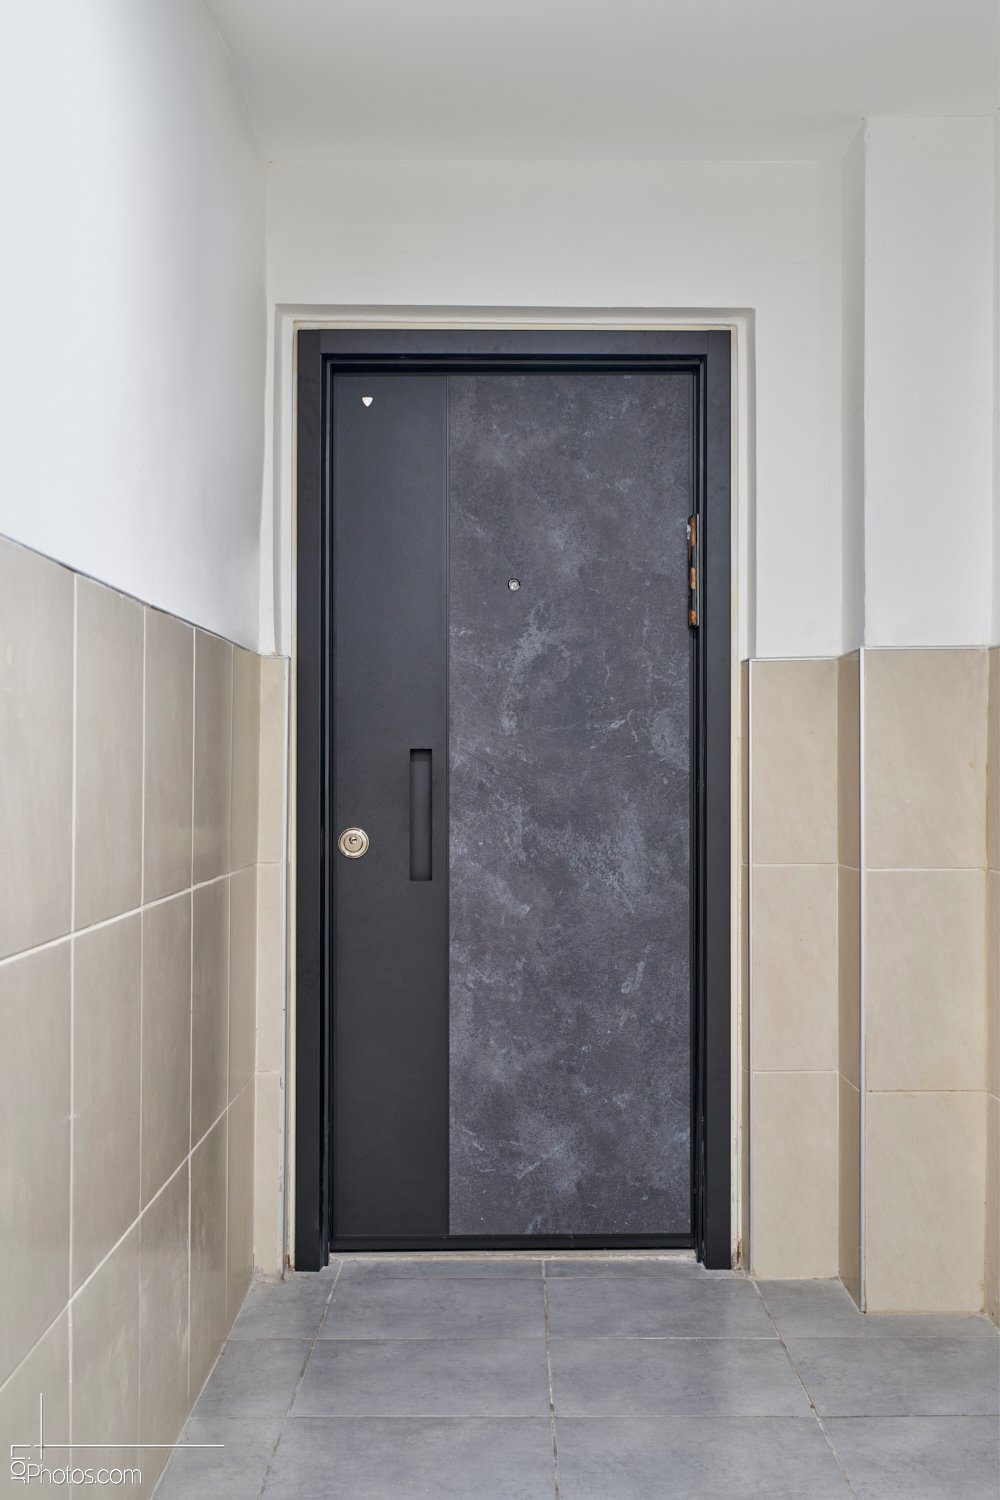 דלת כניסה מדגם איביזה בצבע אפור עם ידית פרימיום שחורה.